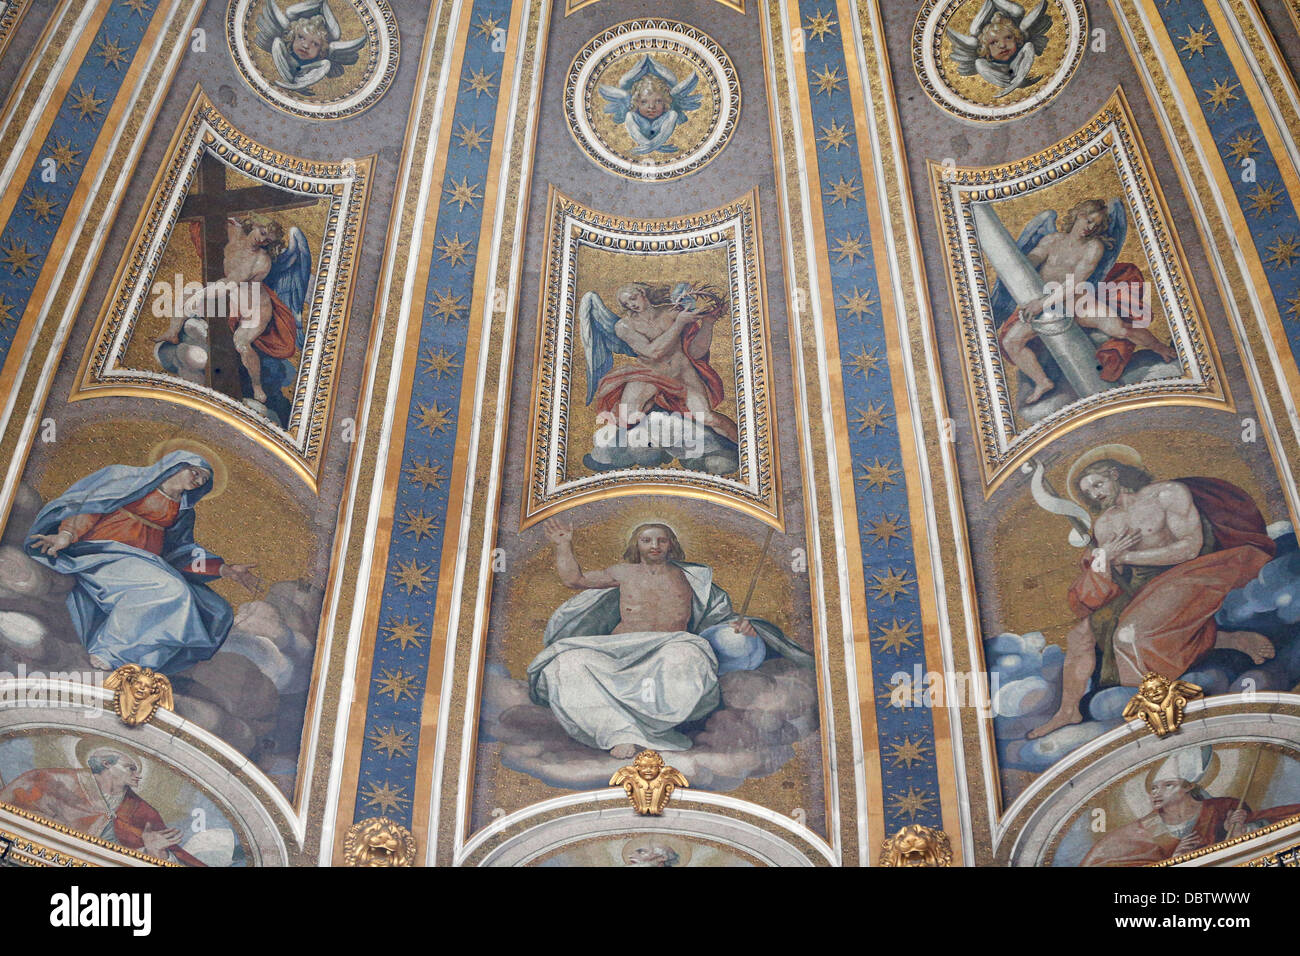 Détail de dome et fresques dans la Basilique Saint-Pierre, Vatican, Rome, Latium, Italie, Europe Banque D'Images